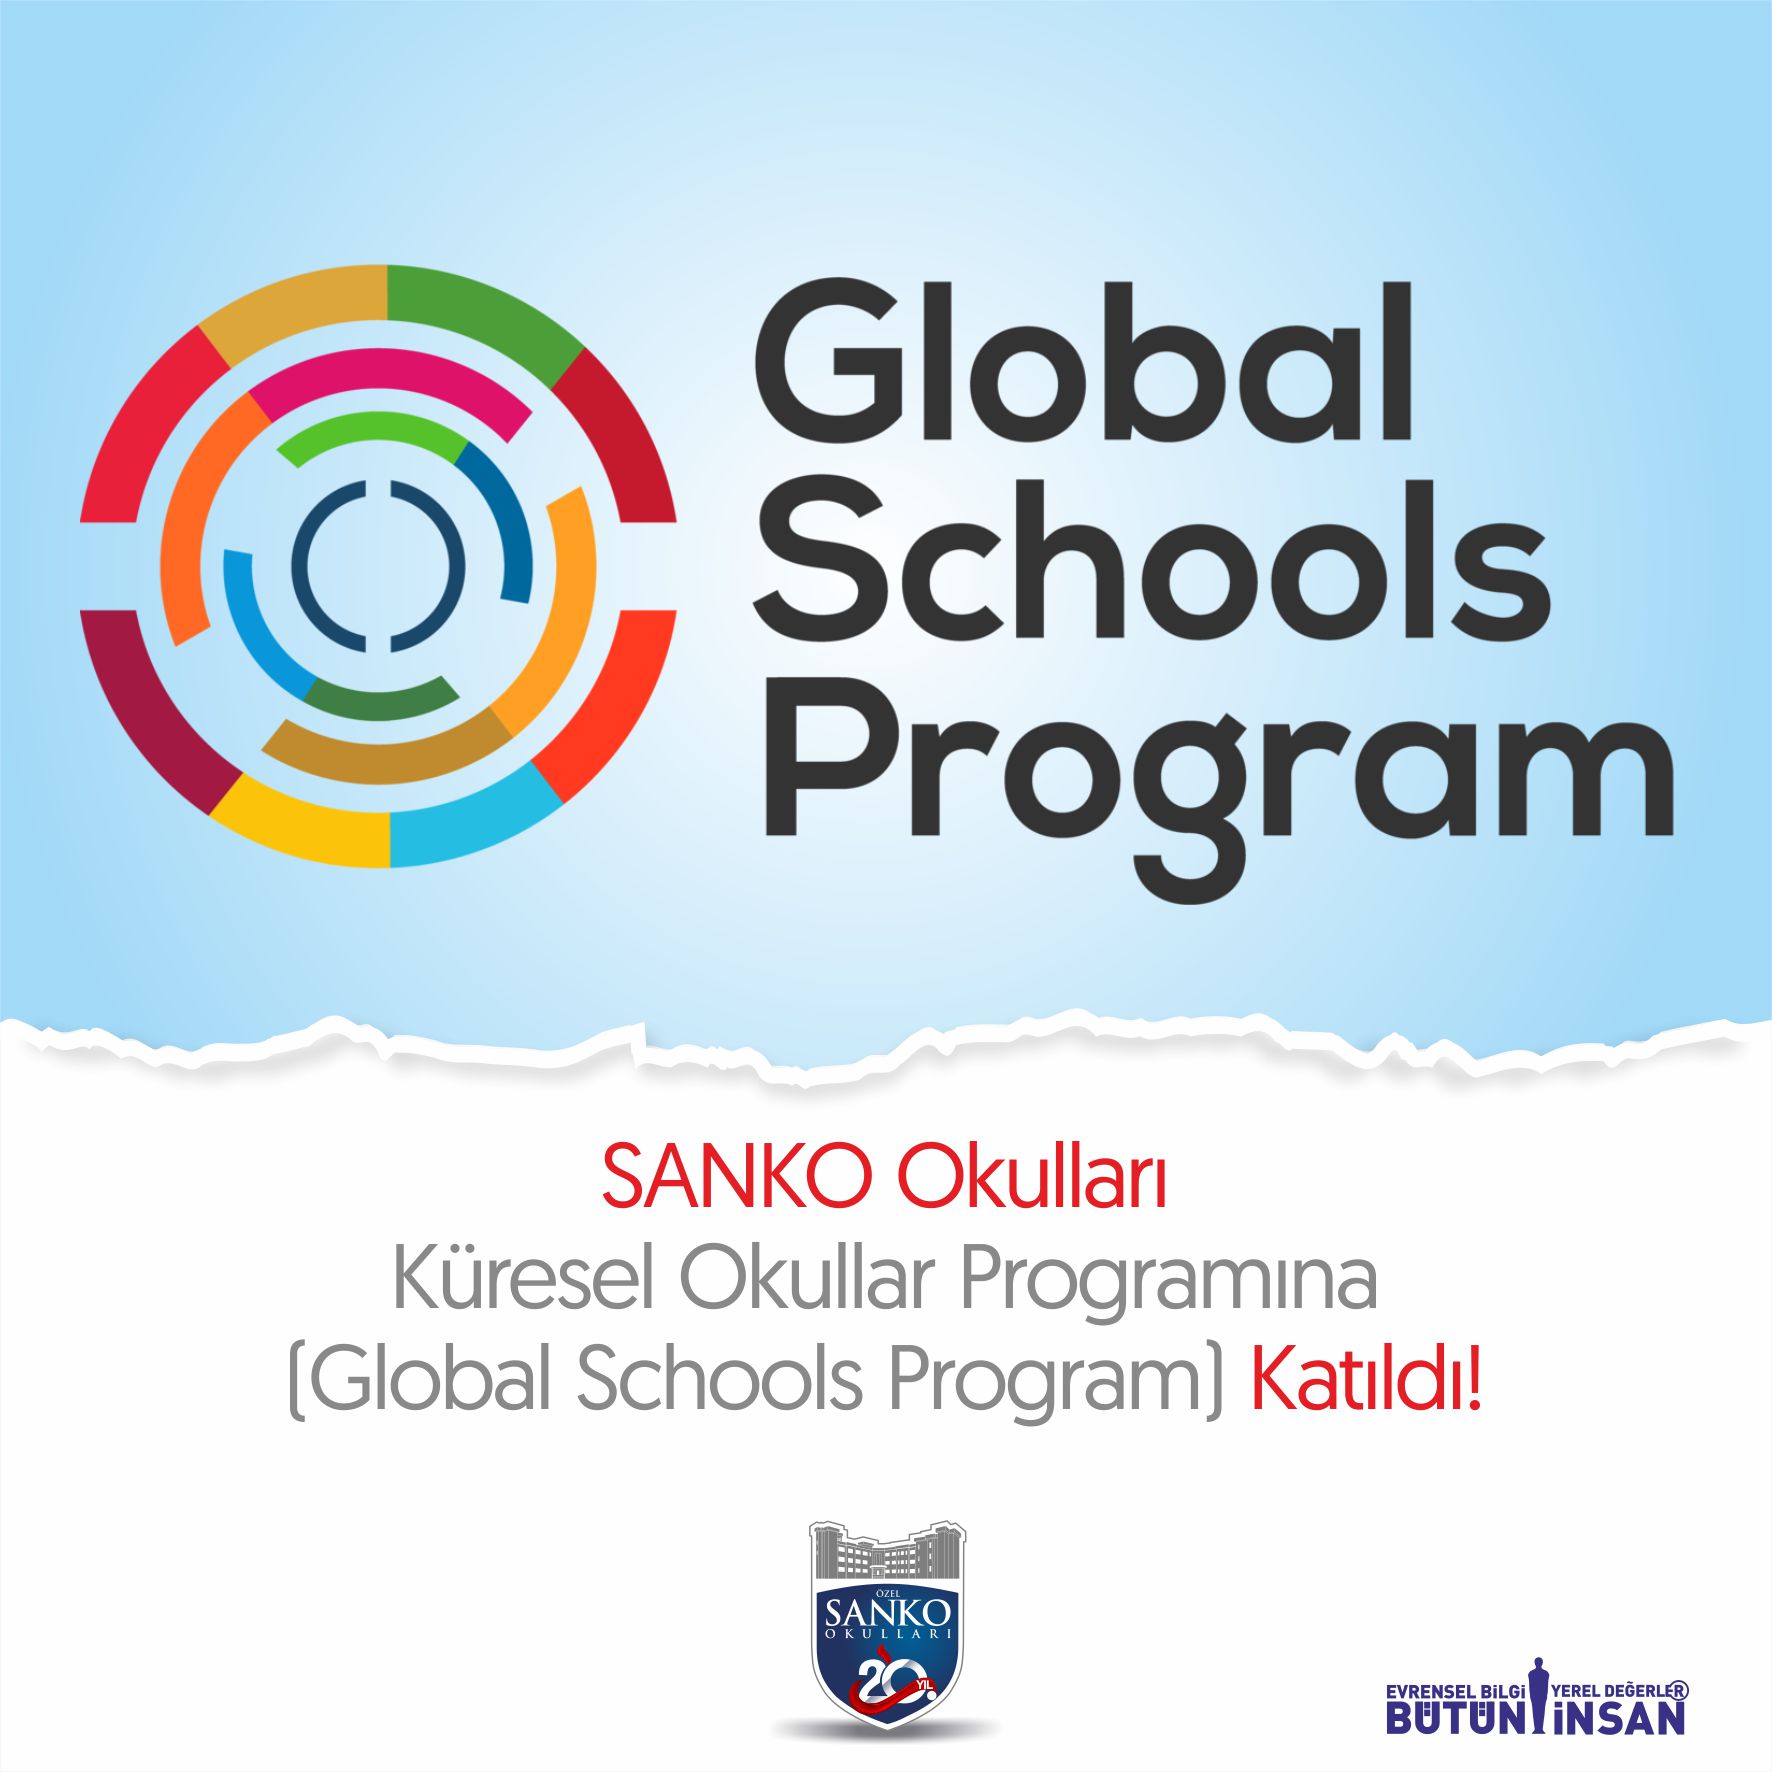 Kendini küresel topluluğun parçası gören, gezegenimize ve insanlığa karşı sorumluluk hisseden dünya vatandaşları yetiştirmek için çalışan SANKO Okulları, ..